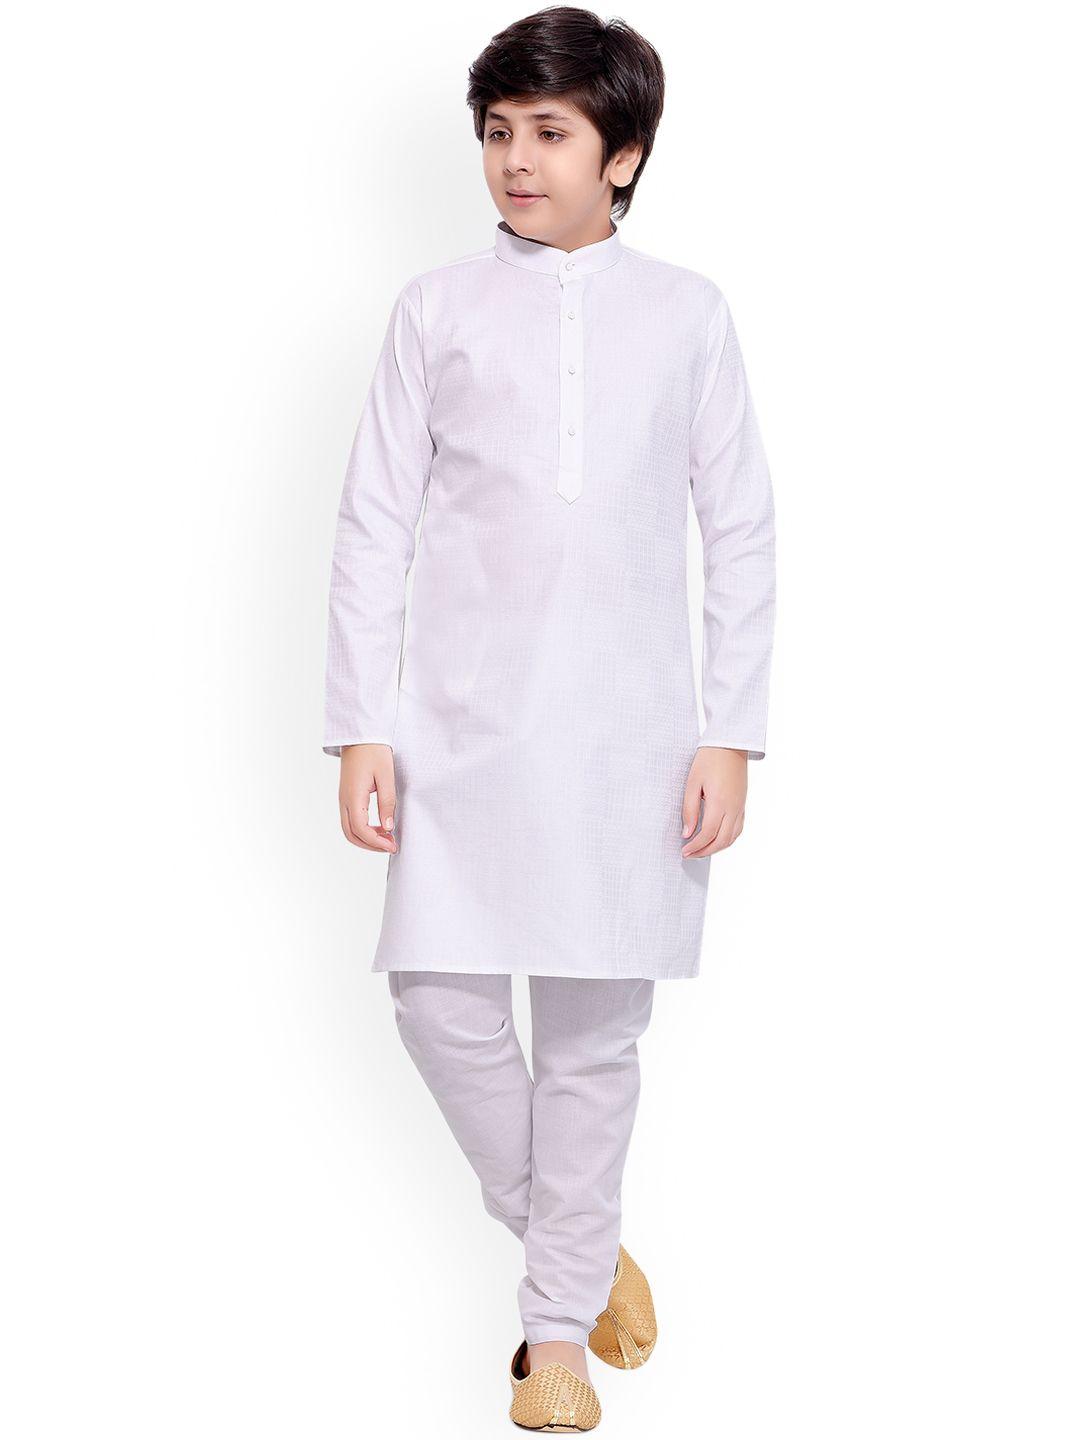 jeetethnics boys white regular kurta with pyjamas